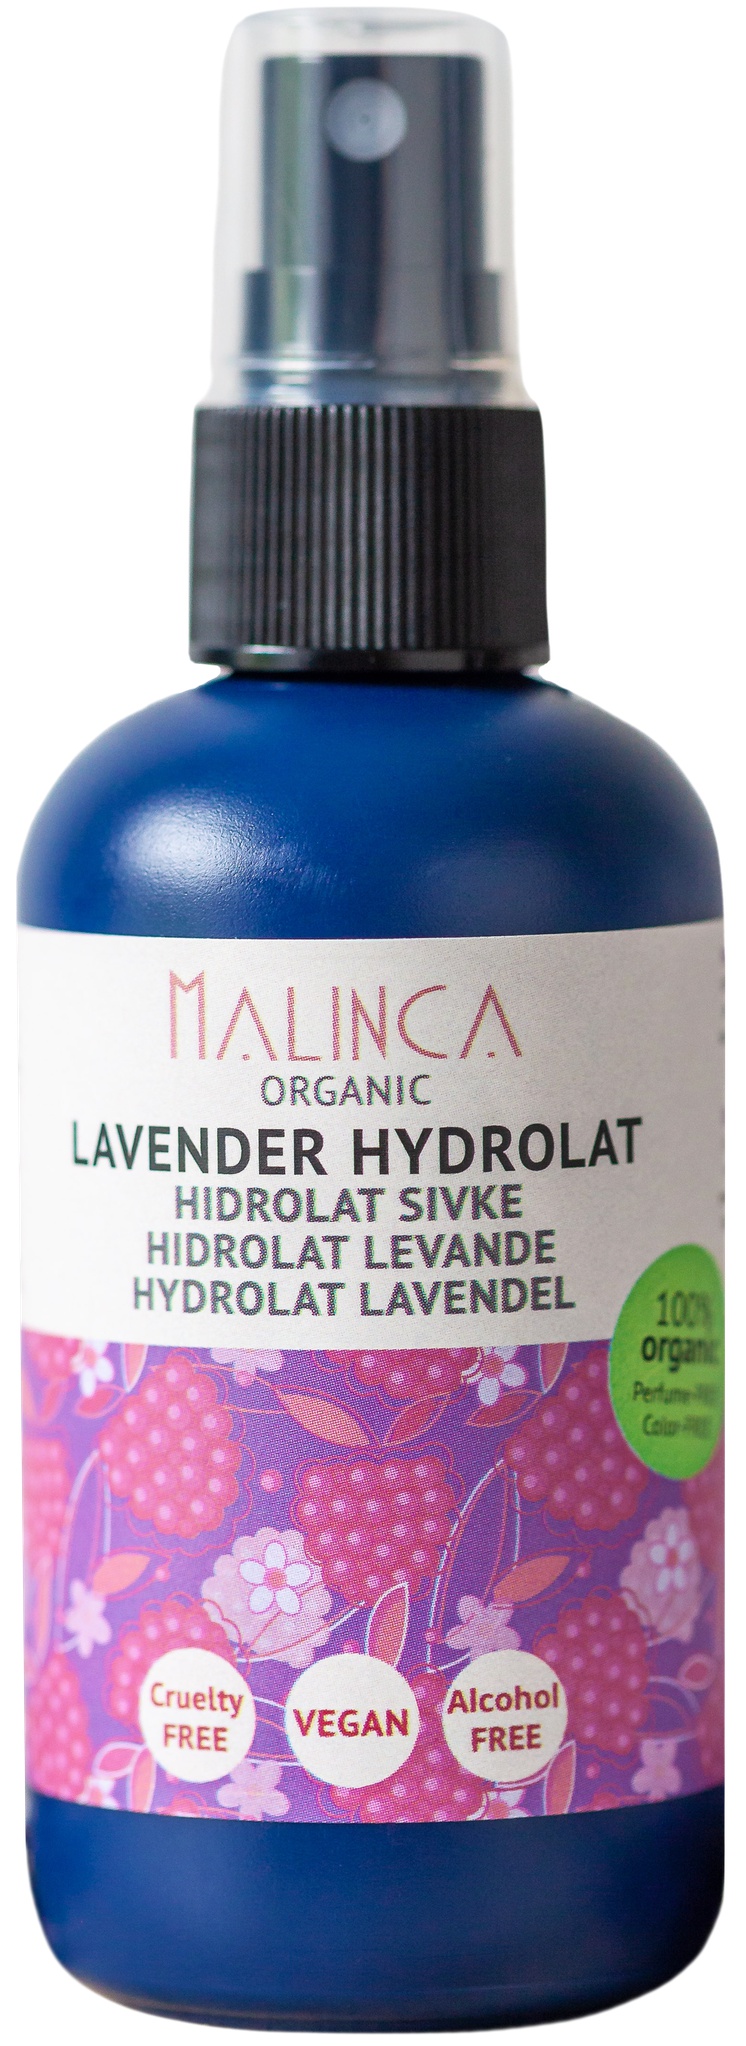 Malinca Organic Lavender Hydrosol